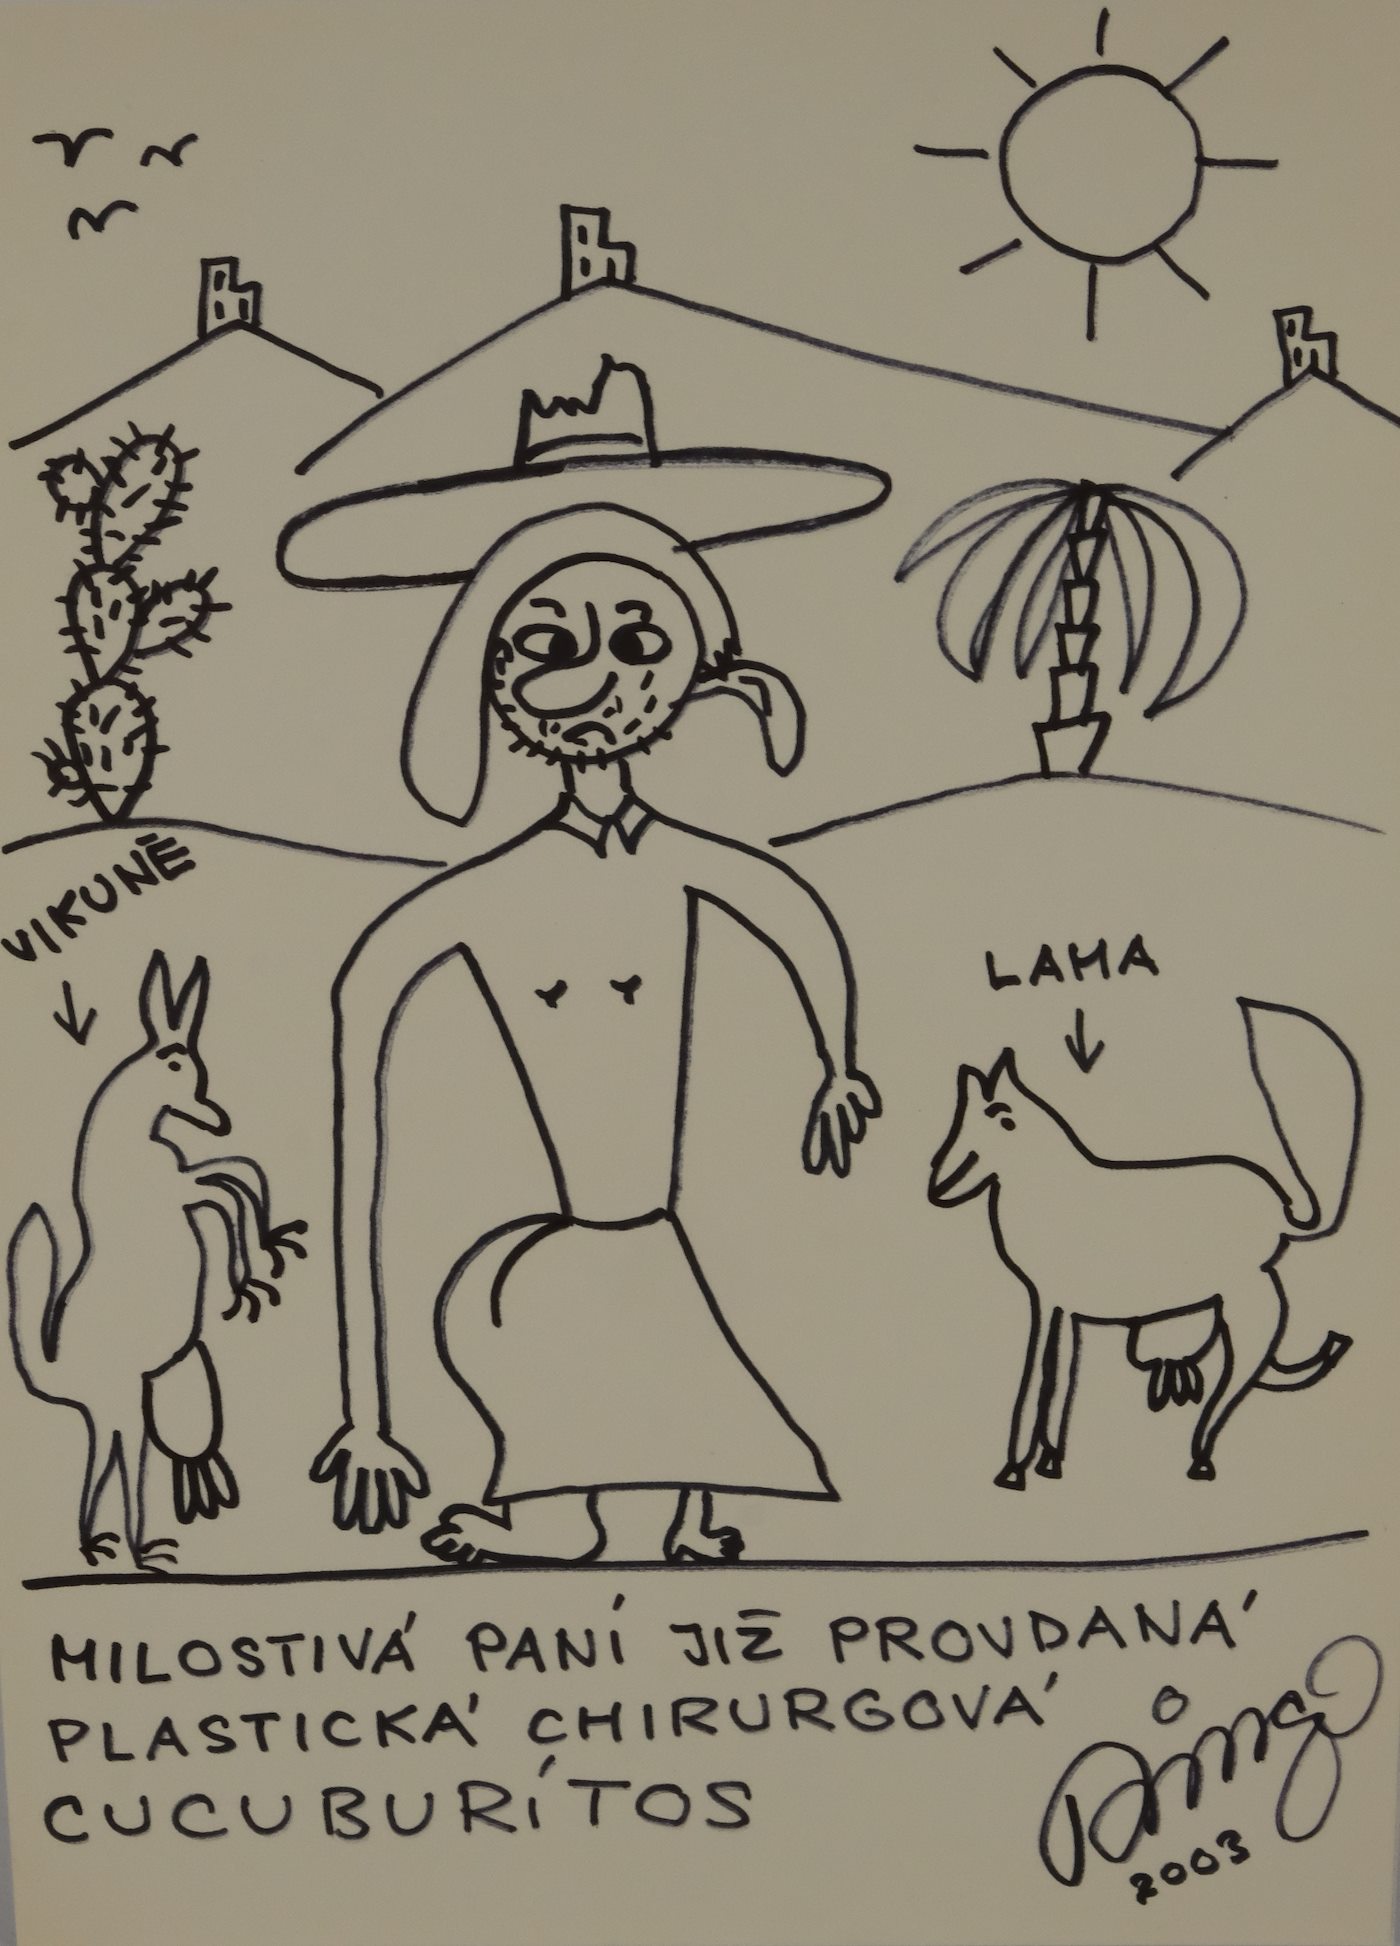 František Ringo Čech - Originál ilustrace knihy "Cucurucuců" (15)